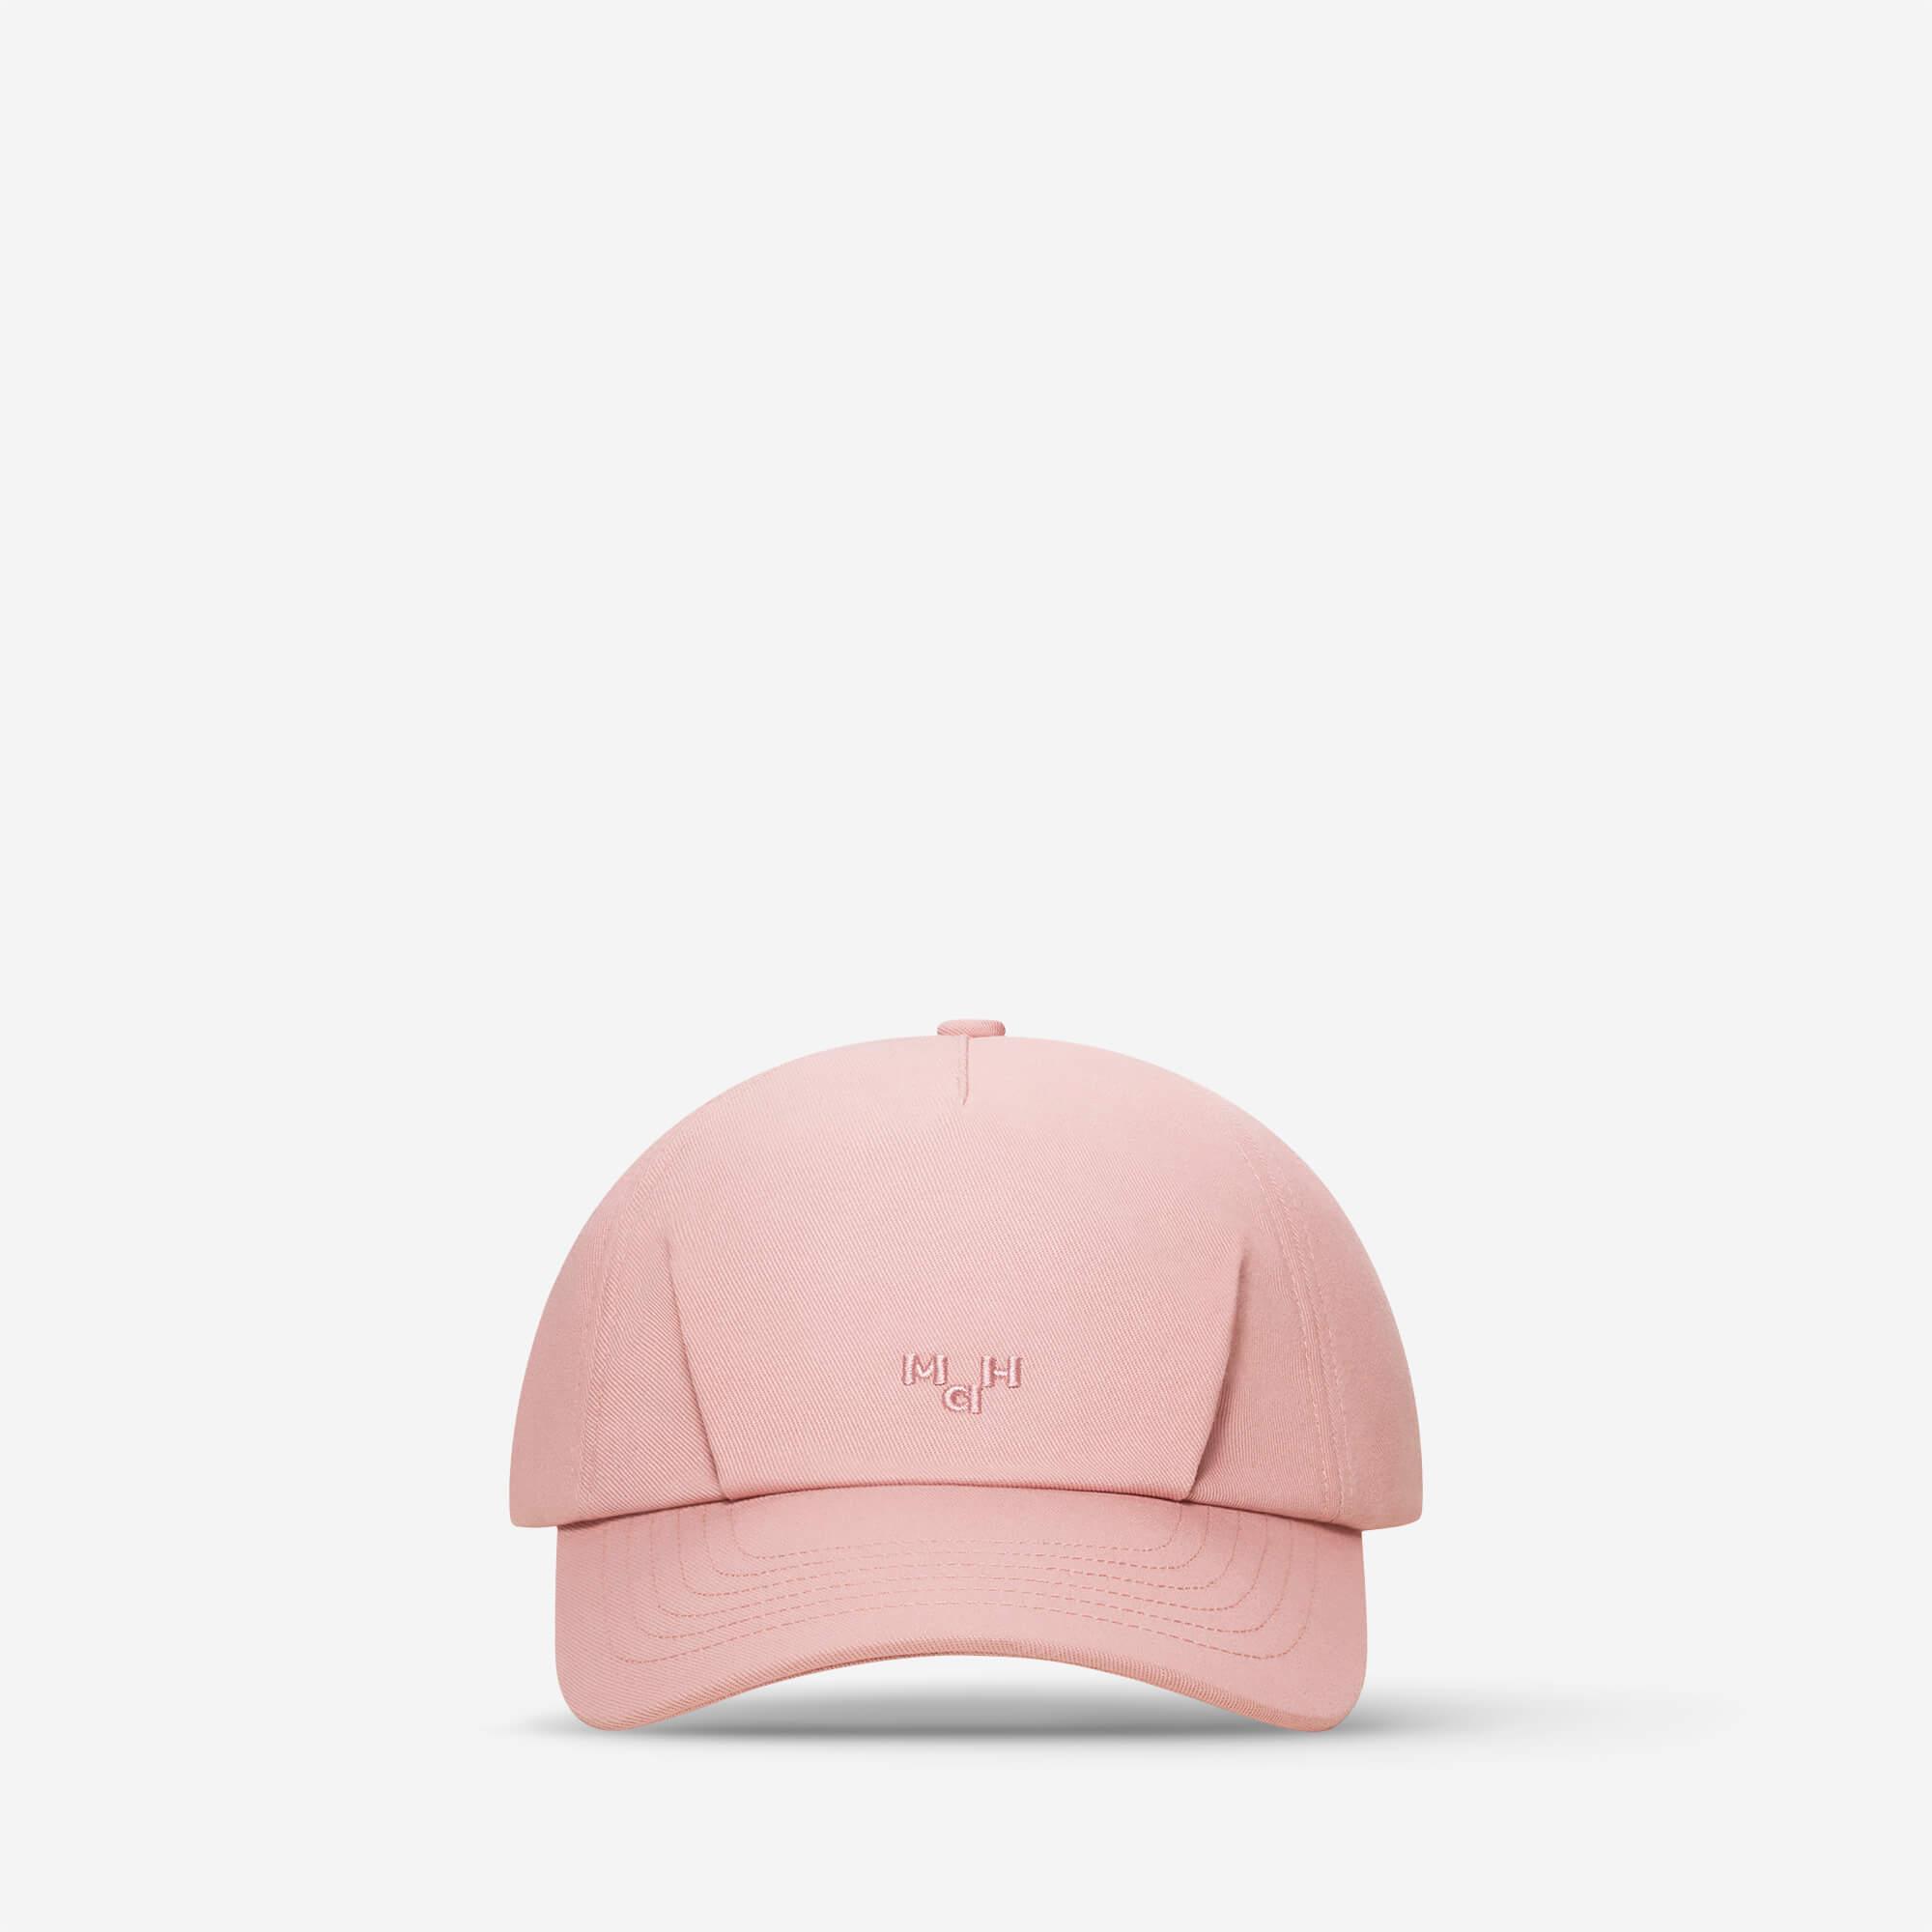 Cotton Sun Cap For Summer - Pink